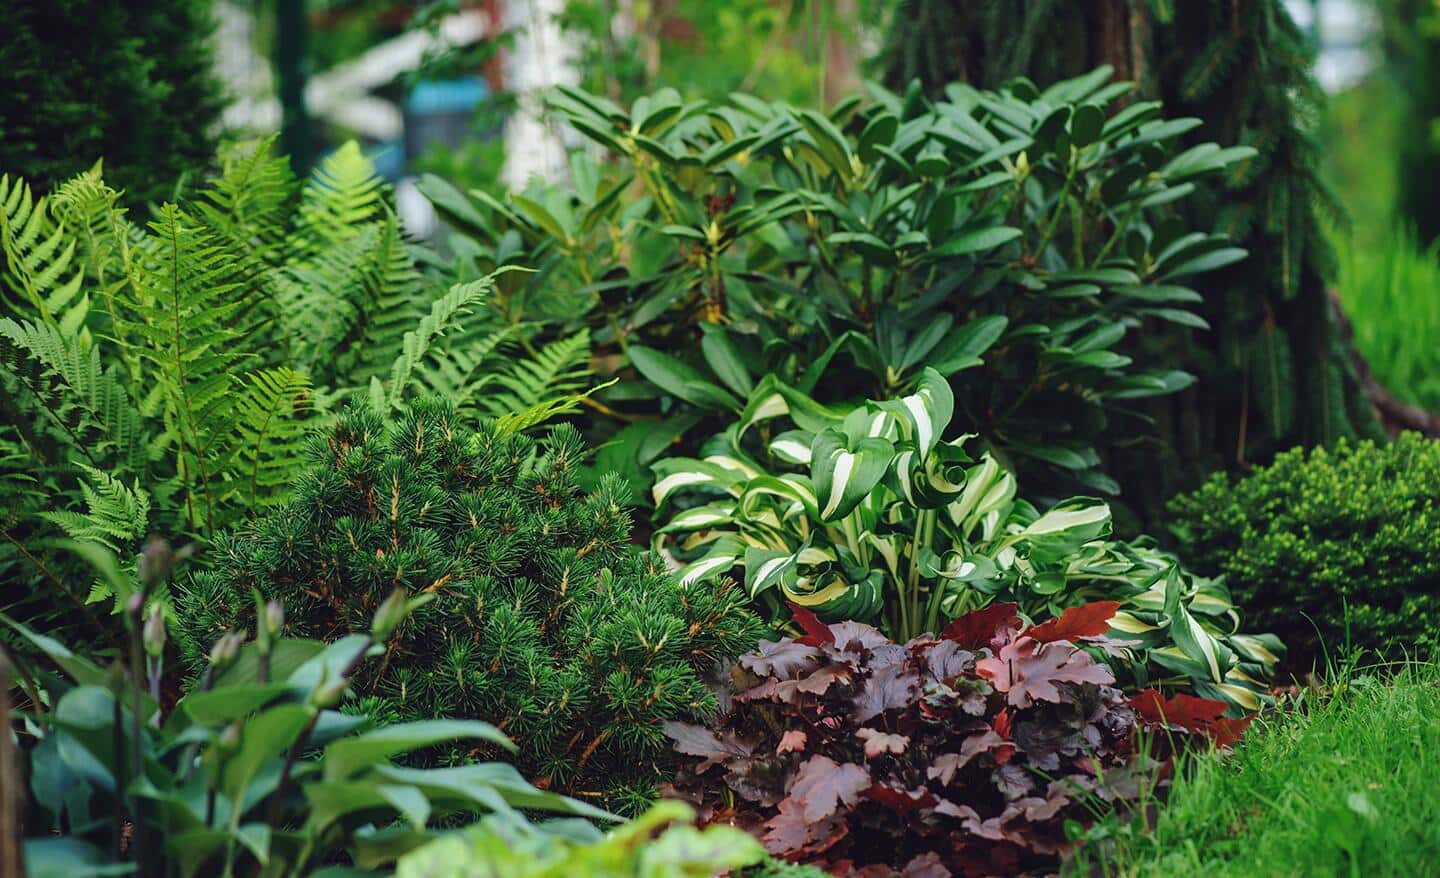 Ferns, hostas and heucheras in a shade garden